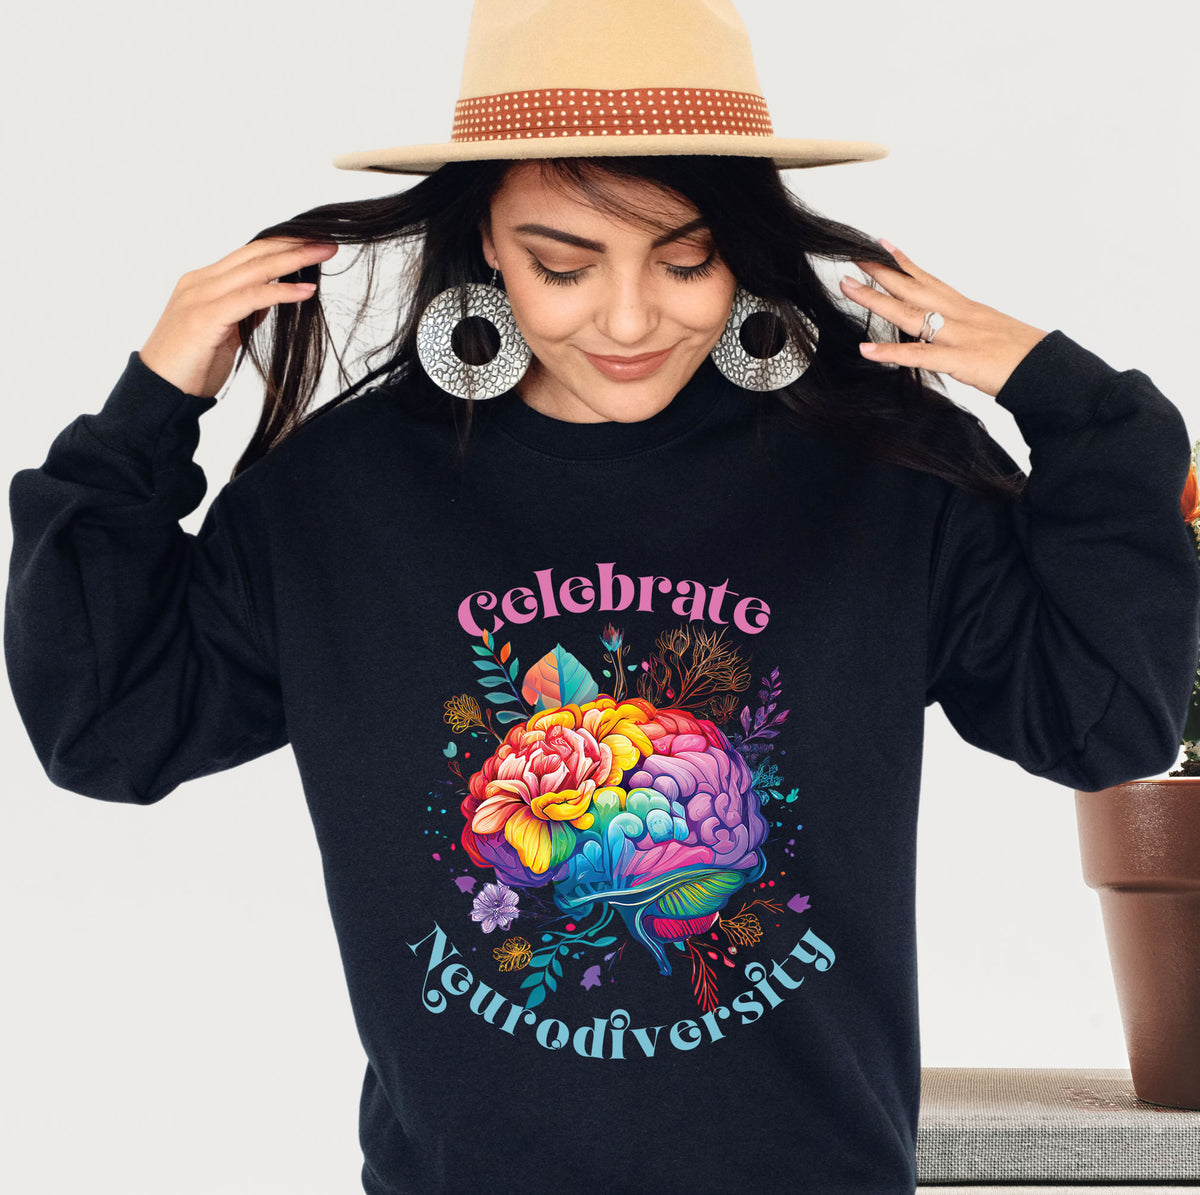 Celebrate Neurodiversity Shirt | Autism Shirt | Black unisex crewneck sweatshirt